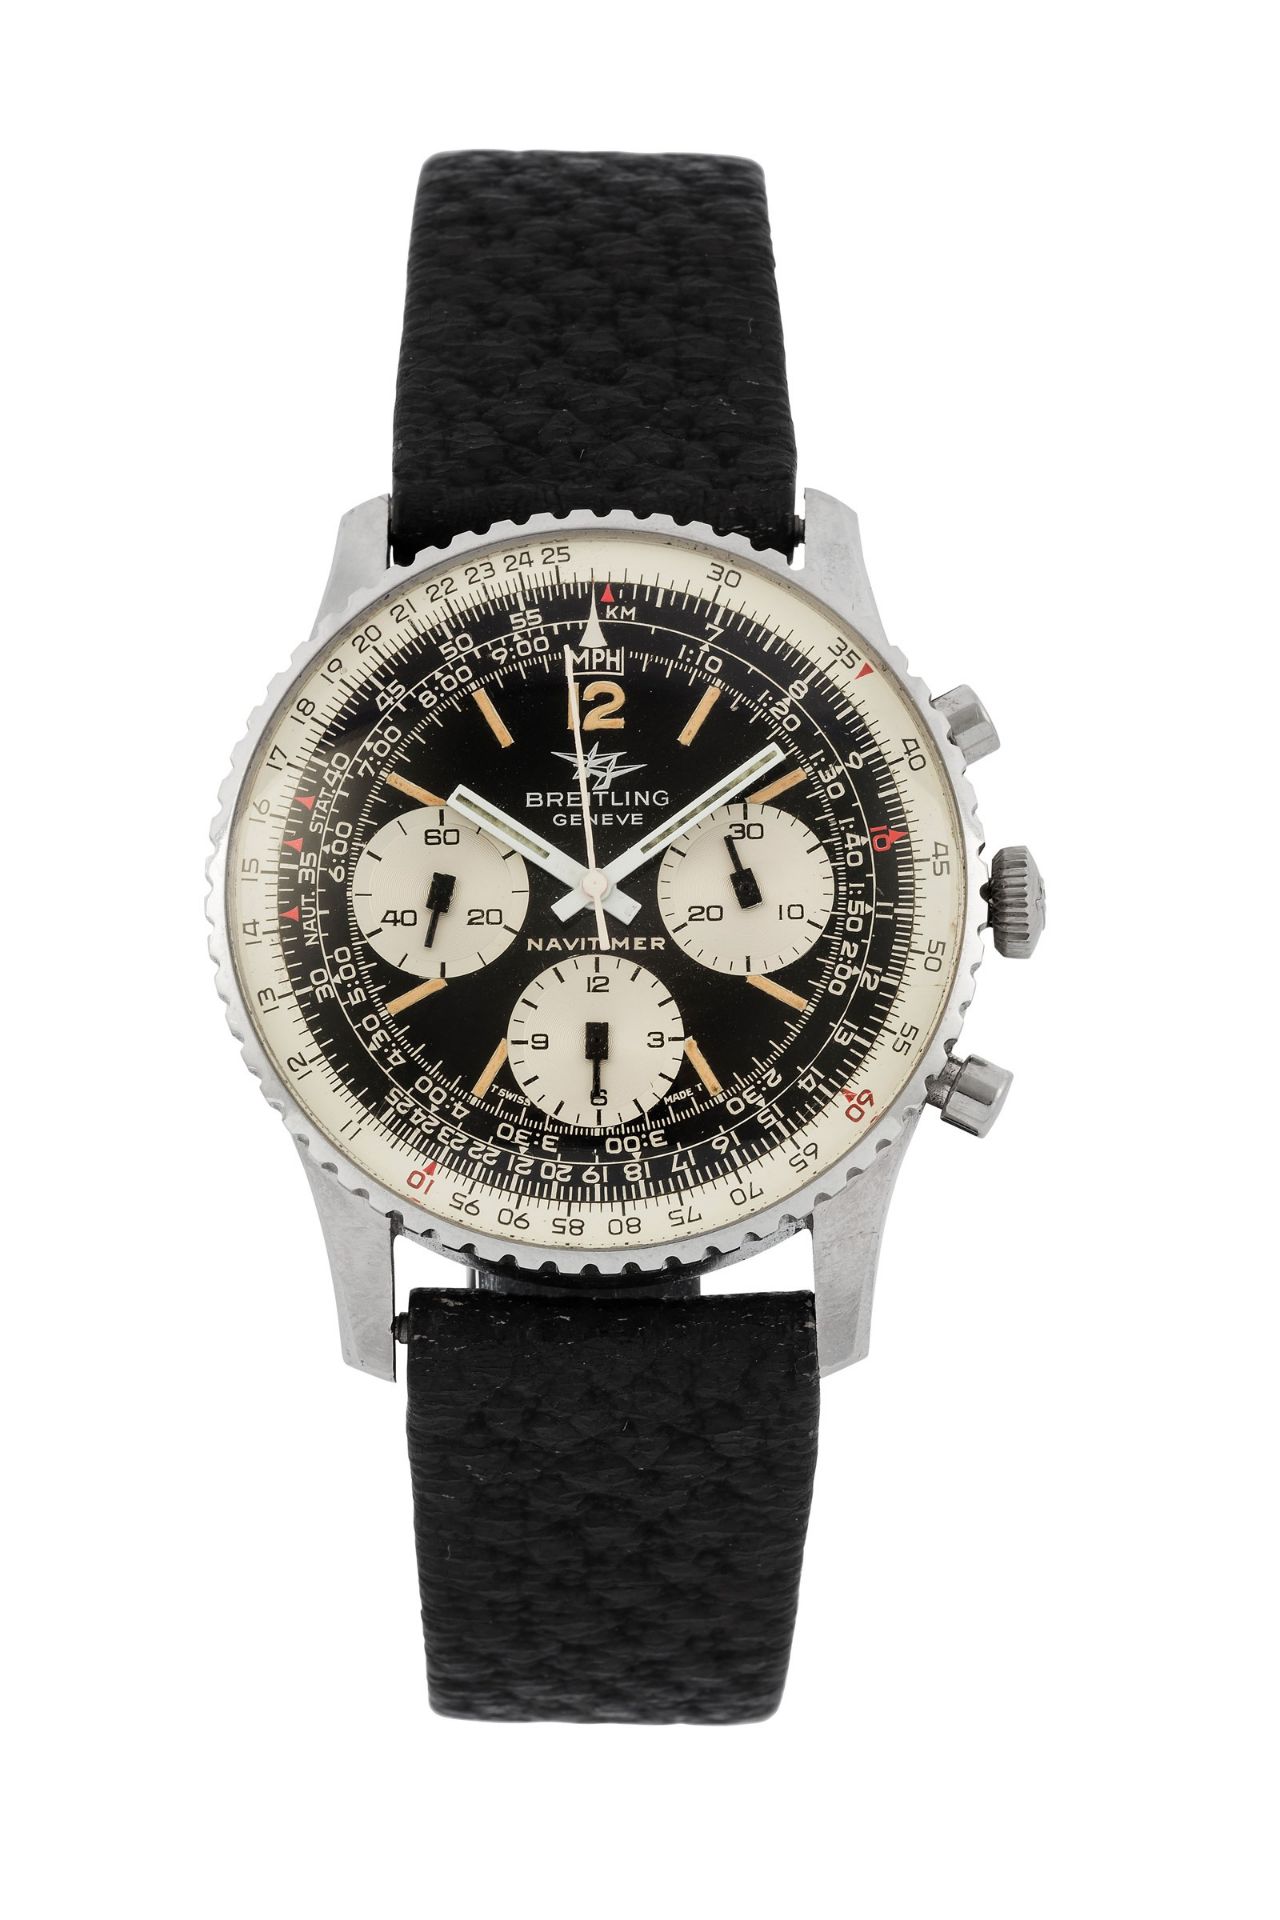 Breitling, Geneve, Navitimer, Ref. 806/809 - Fine, stainless steel chronograph [...]